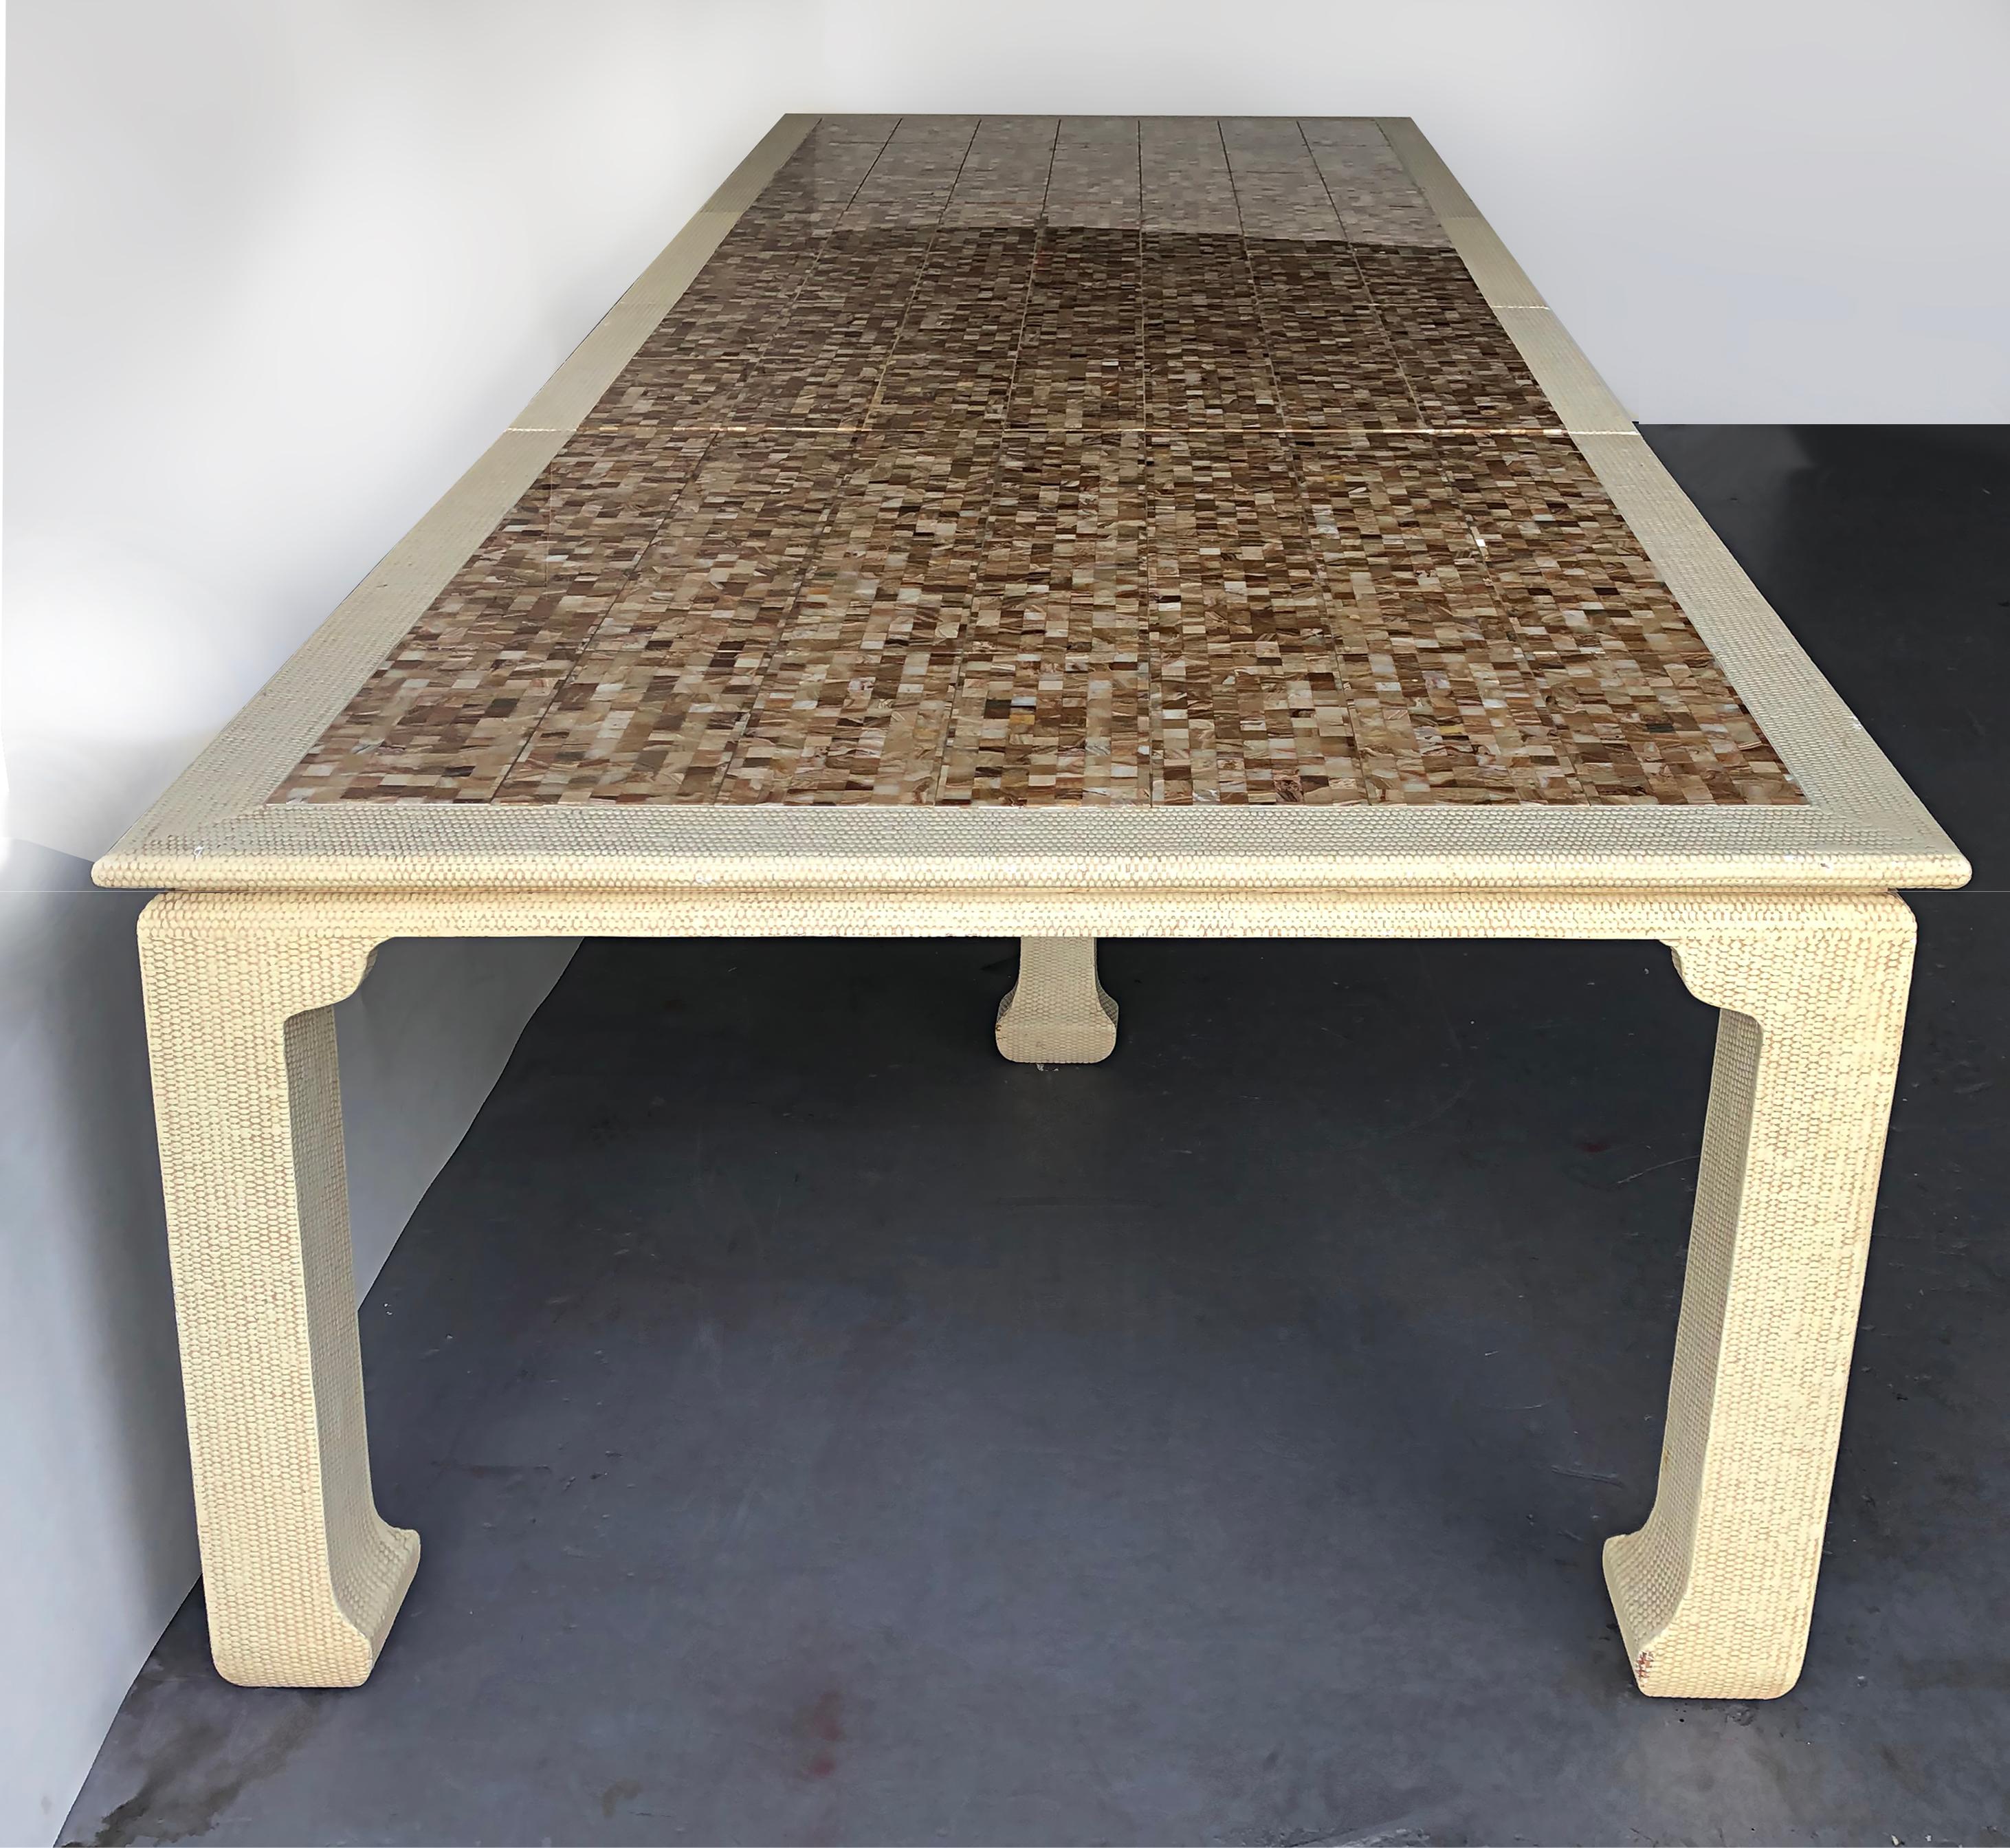 Tessellated Onyx ausziehbarer Esstisch nach Maß, 2 Blätter

Zum Verkauf angeboten wird ein maßgefertigter, erweiterbarer Esstisch mit einer mosaikartigen Onyxplatte. Der Tisch ist ausziehbar, so dass 2 Blätter hinzugefügt werden können. Der Tisch